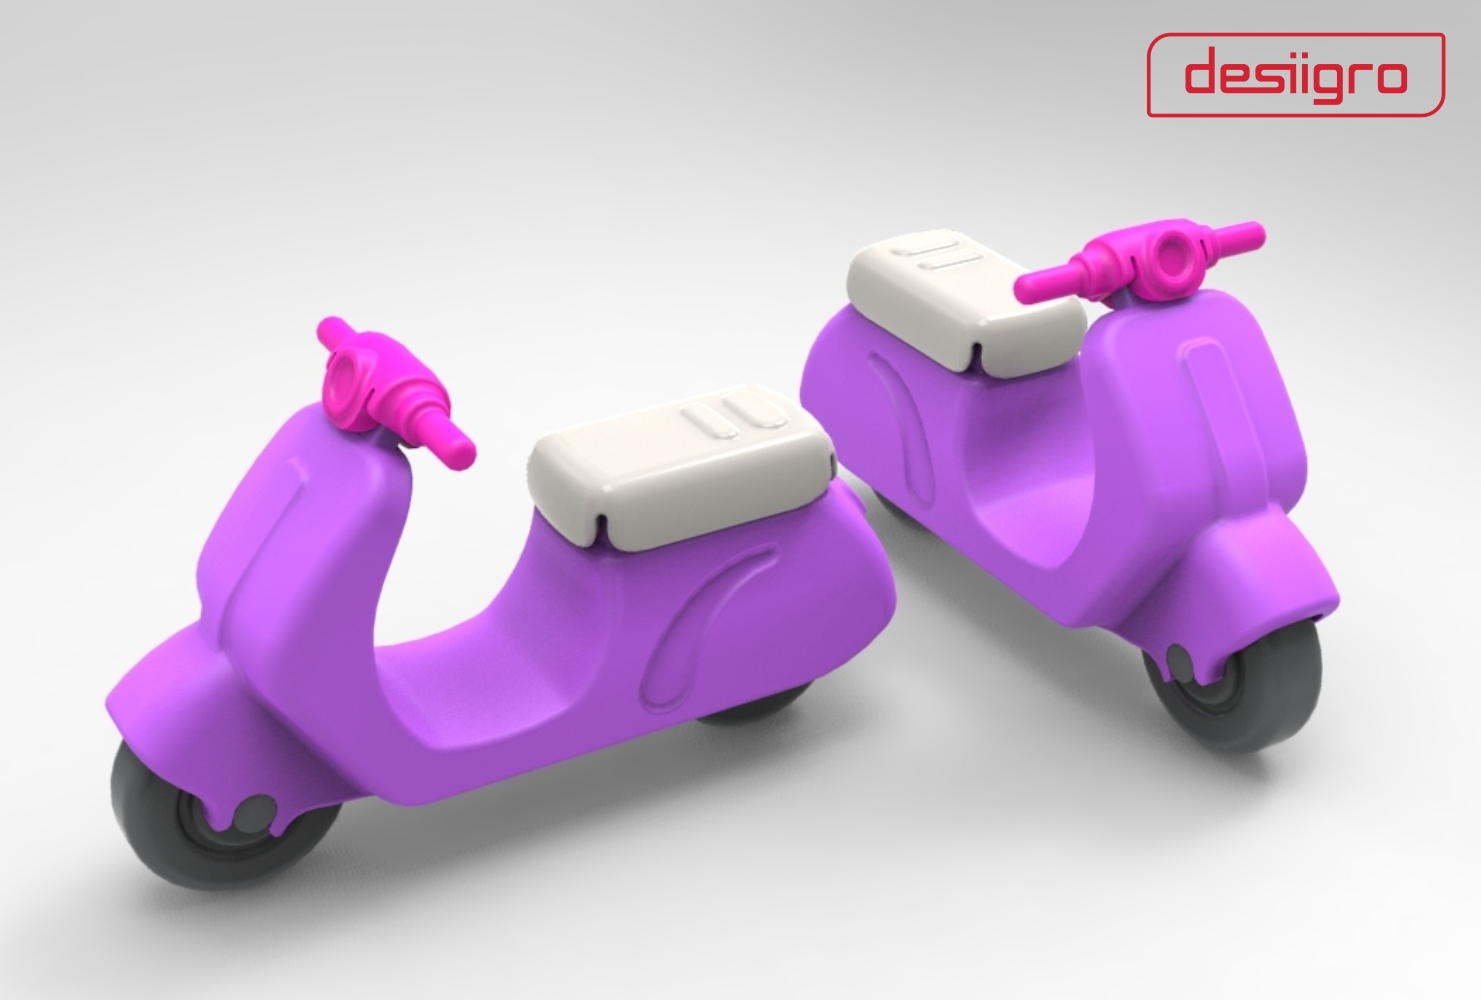 Gro-Scooter 3D in: Chào mừng tới với thế giới của những chiếc xe Gro-Scooter 3D in. Những bức hình cuốn hút sẽ đem đến cho bạn niềm vui trẻ trung và sự tò mò về những gì có thể cải tiến trong tương lai. Qua mỗi hình ảnh trong video, bạn sẽ khám phá ra những quy trình sản xuất và sự độc đáo của chiếc xe ấn tượng này.